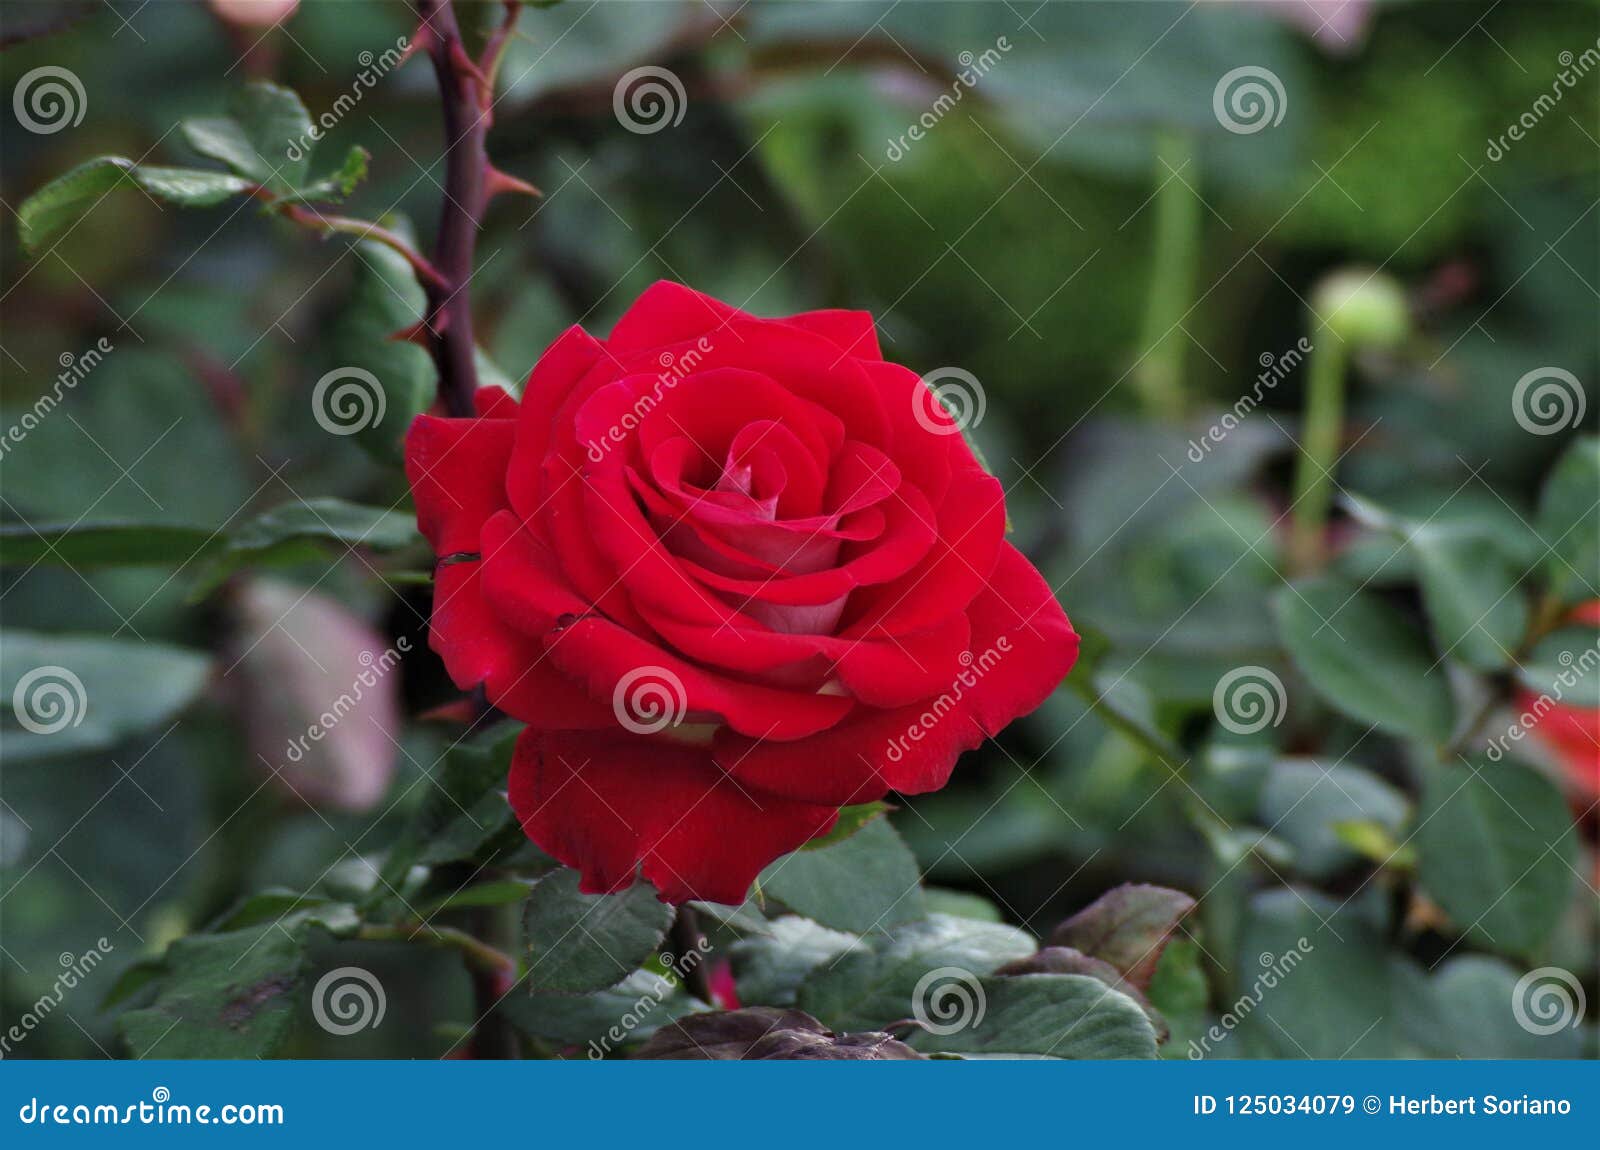 red exotic rose flower closeup on a honduras national park la ceiba cuero y salado